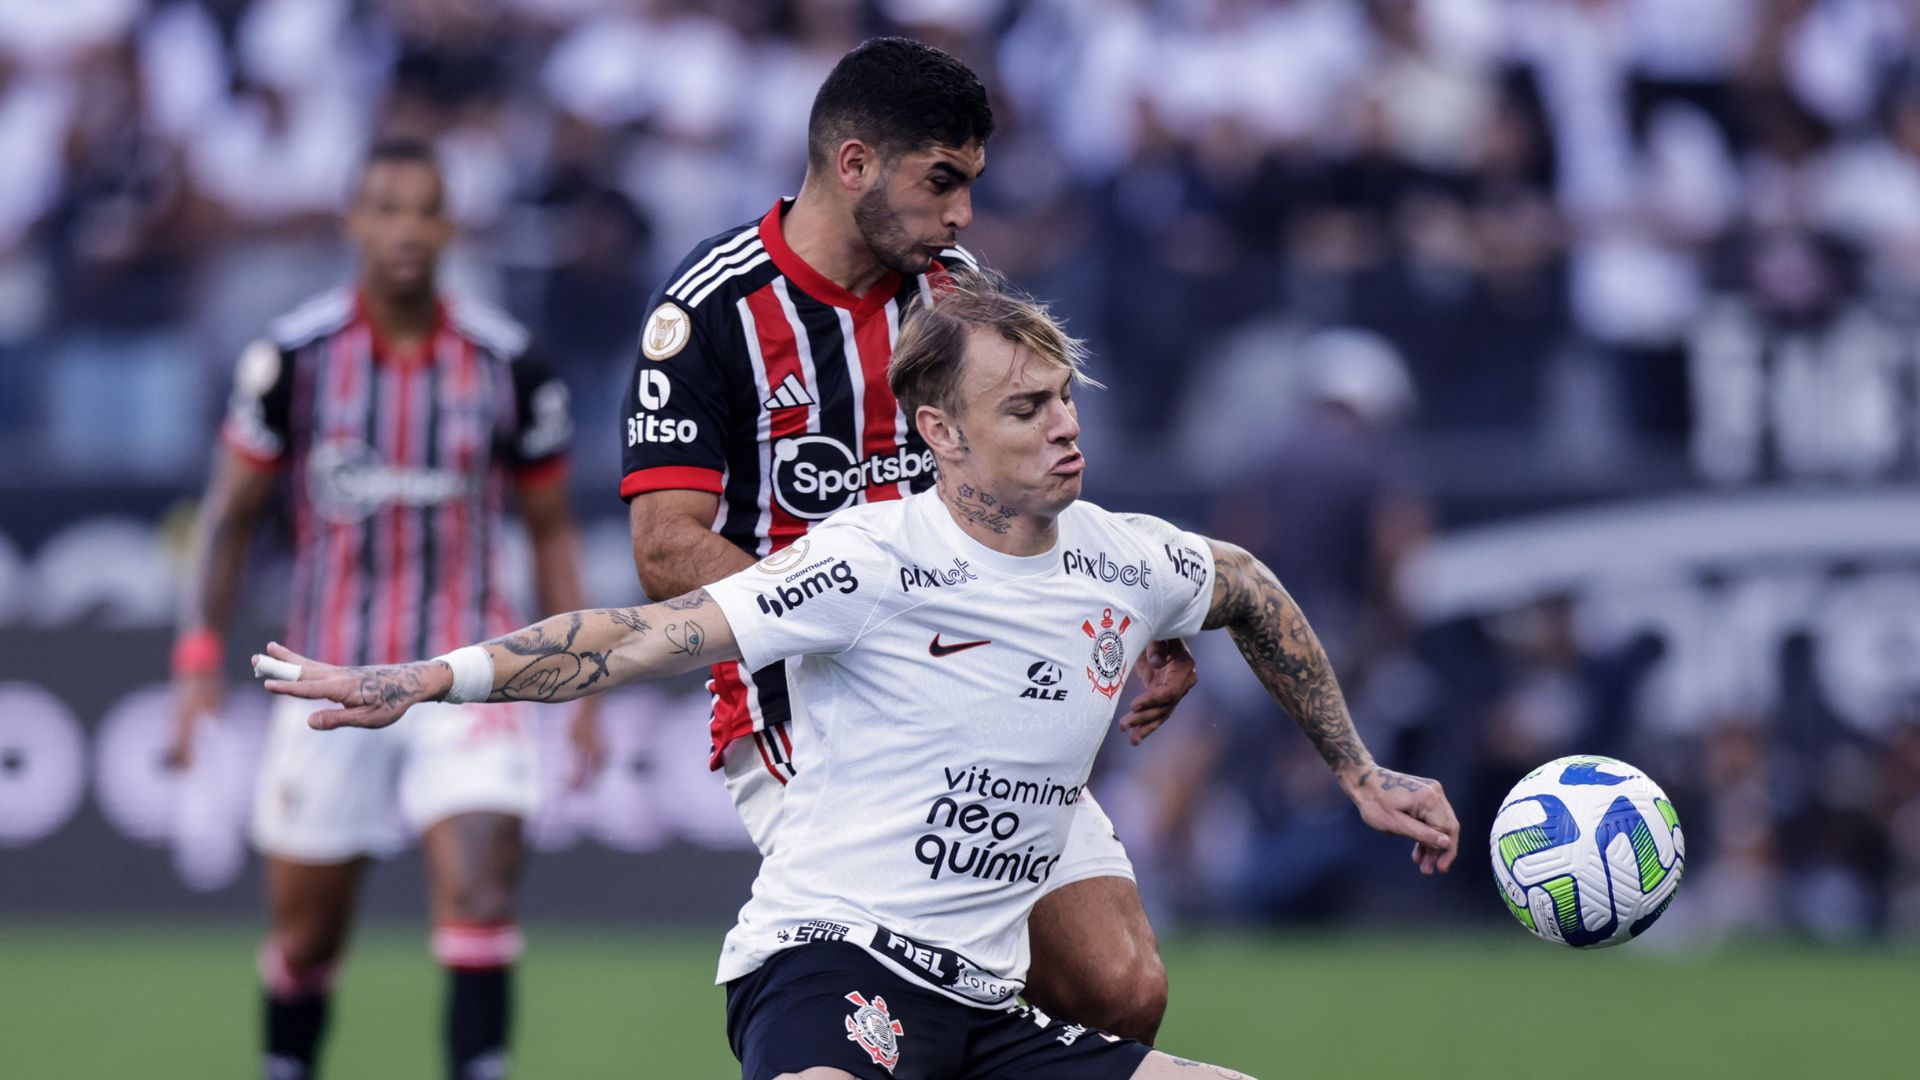 Coritiba: datas definidas para jogos contra Corinthians e São Paulo